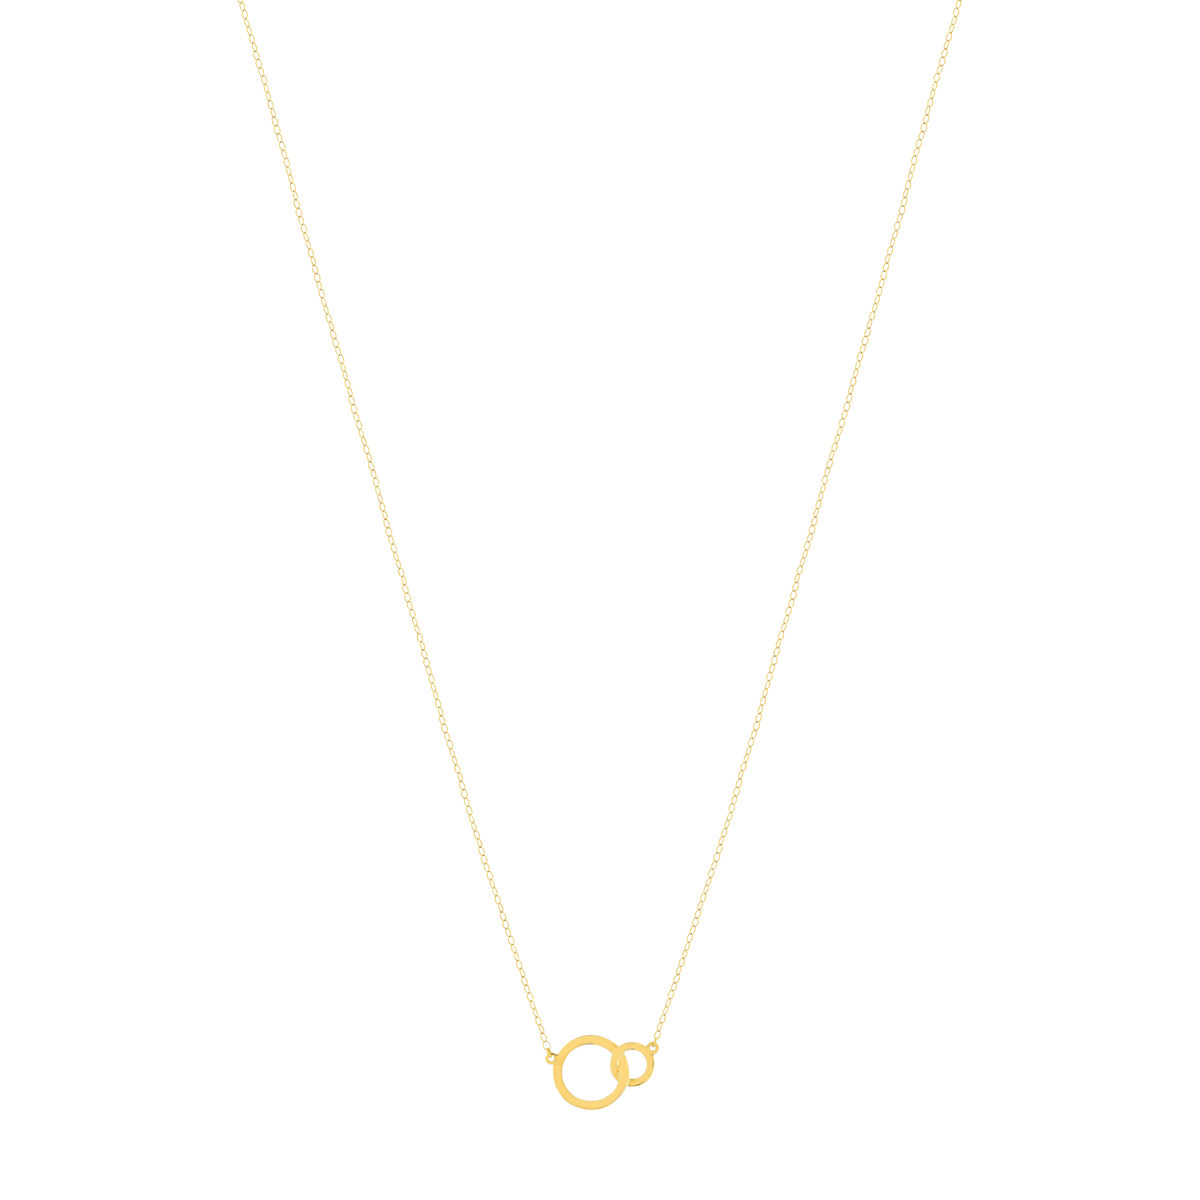 Collier or jaune 750 45 cm motif 2 anneaux entrelacés - vue 2